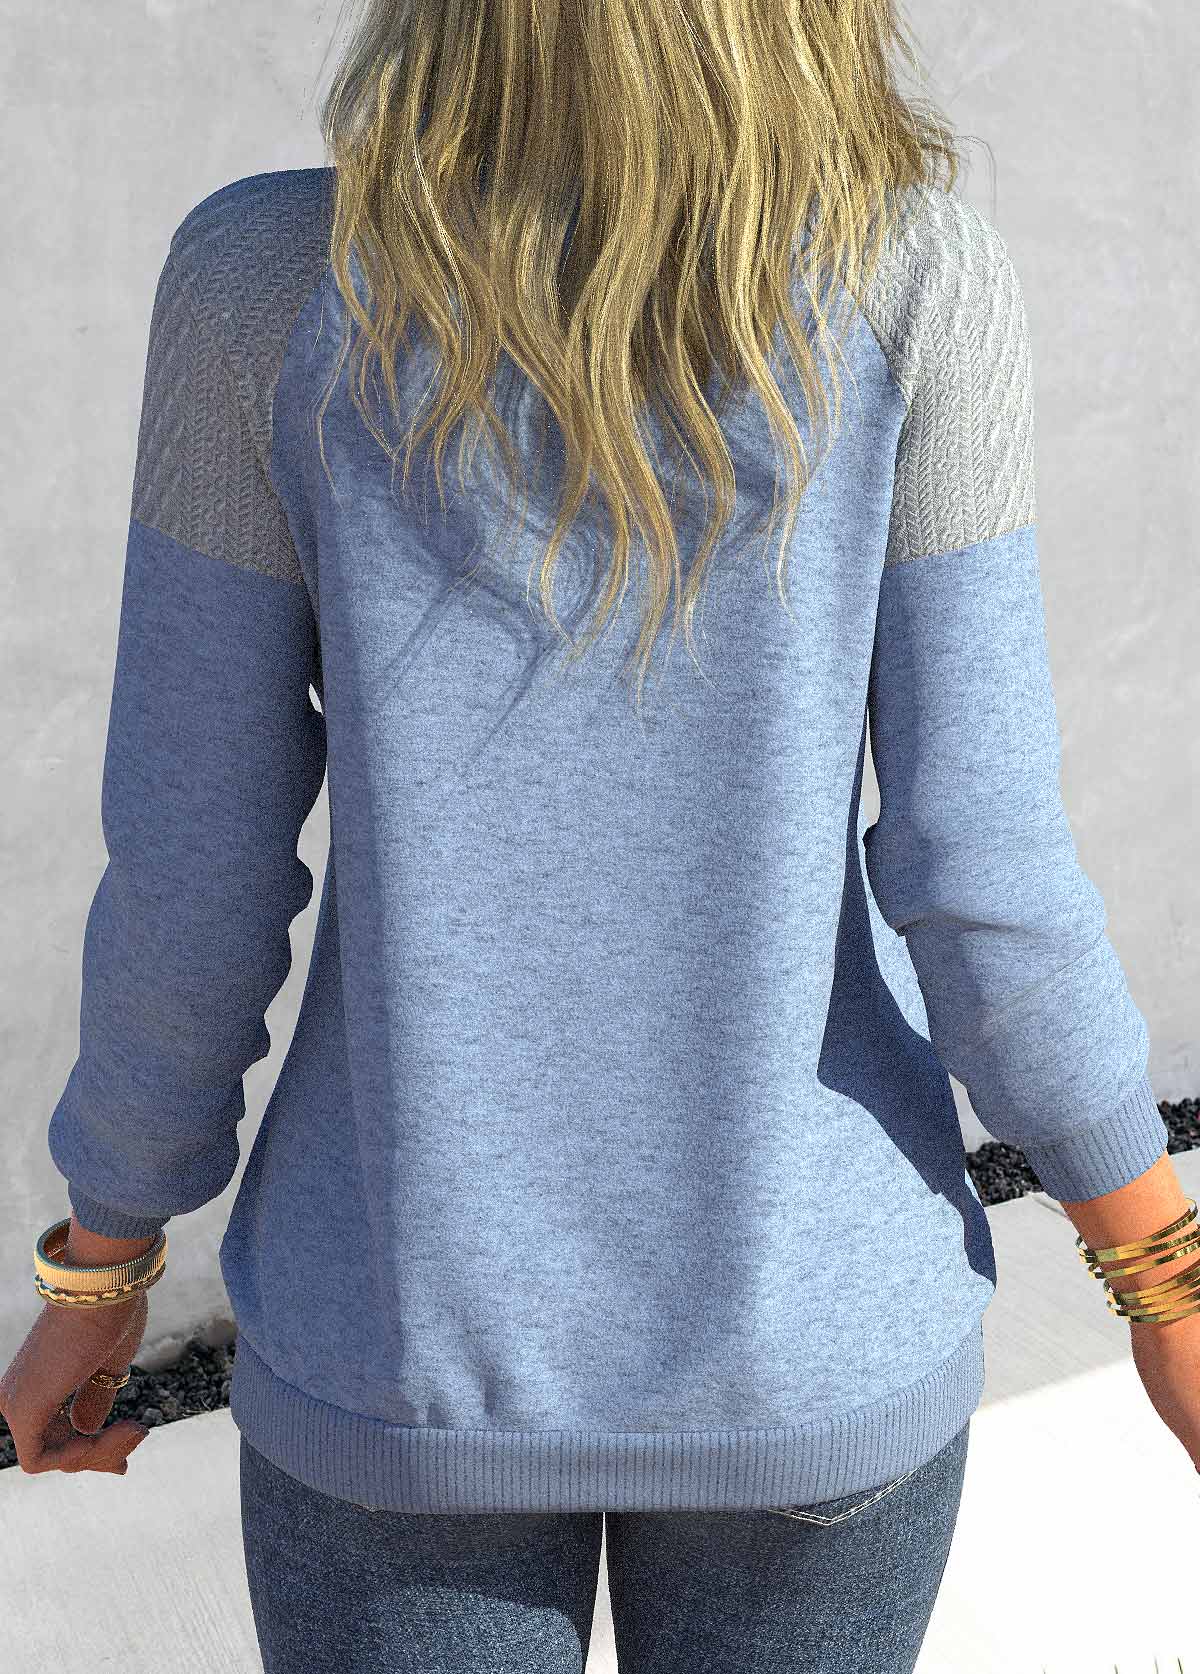 Dusty Blue Long Sleeve Zipper Sweatshirt